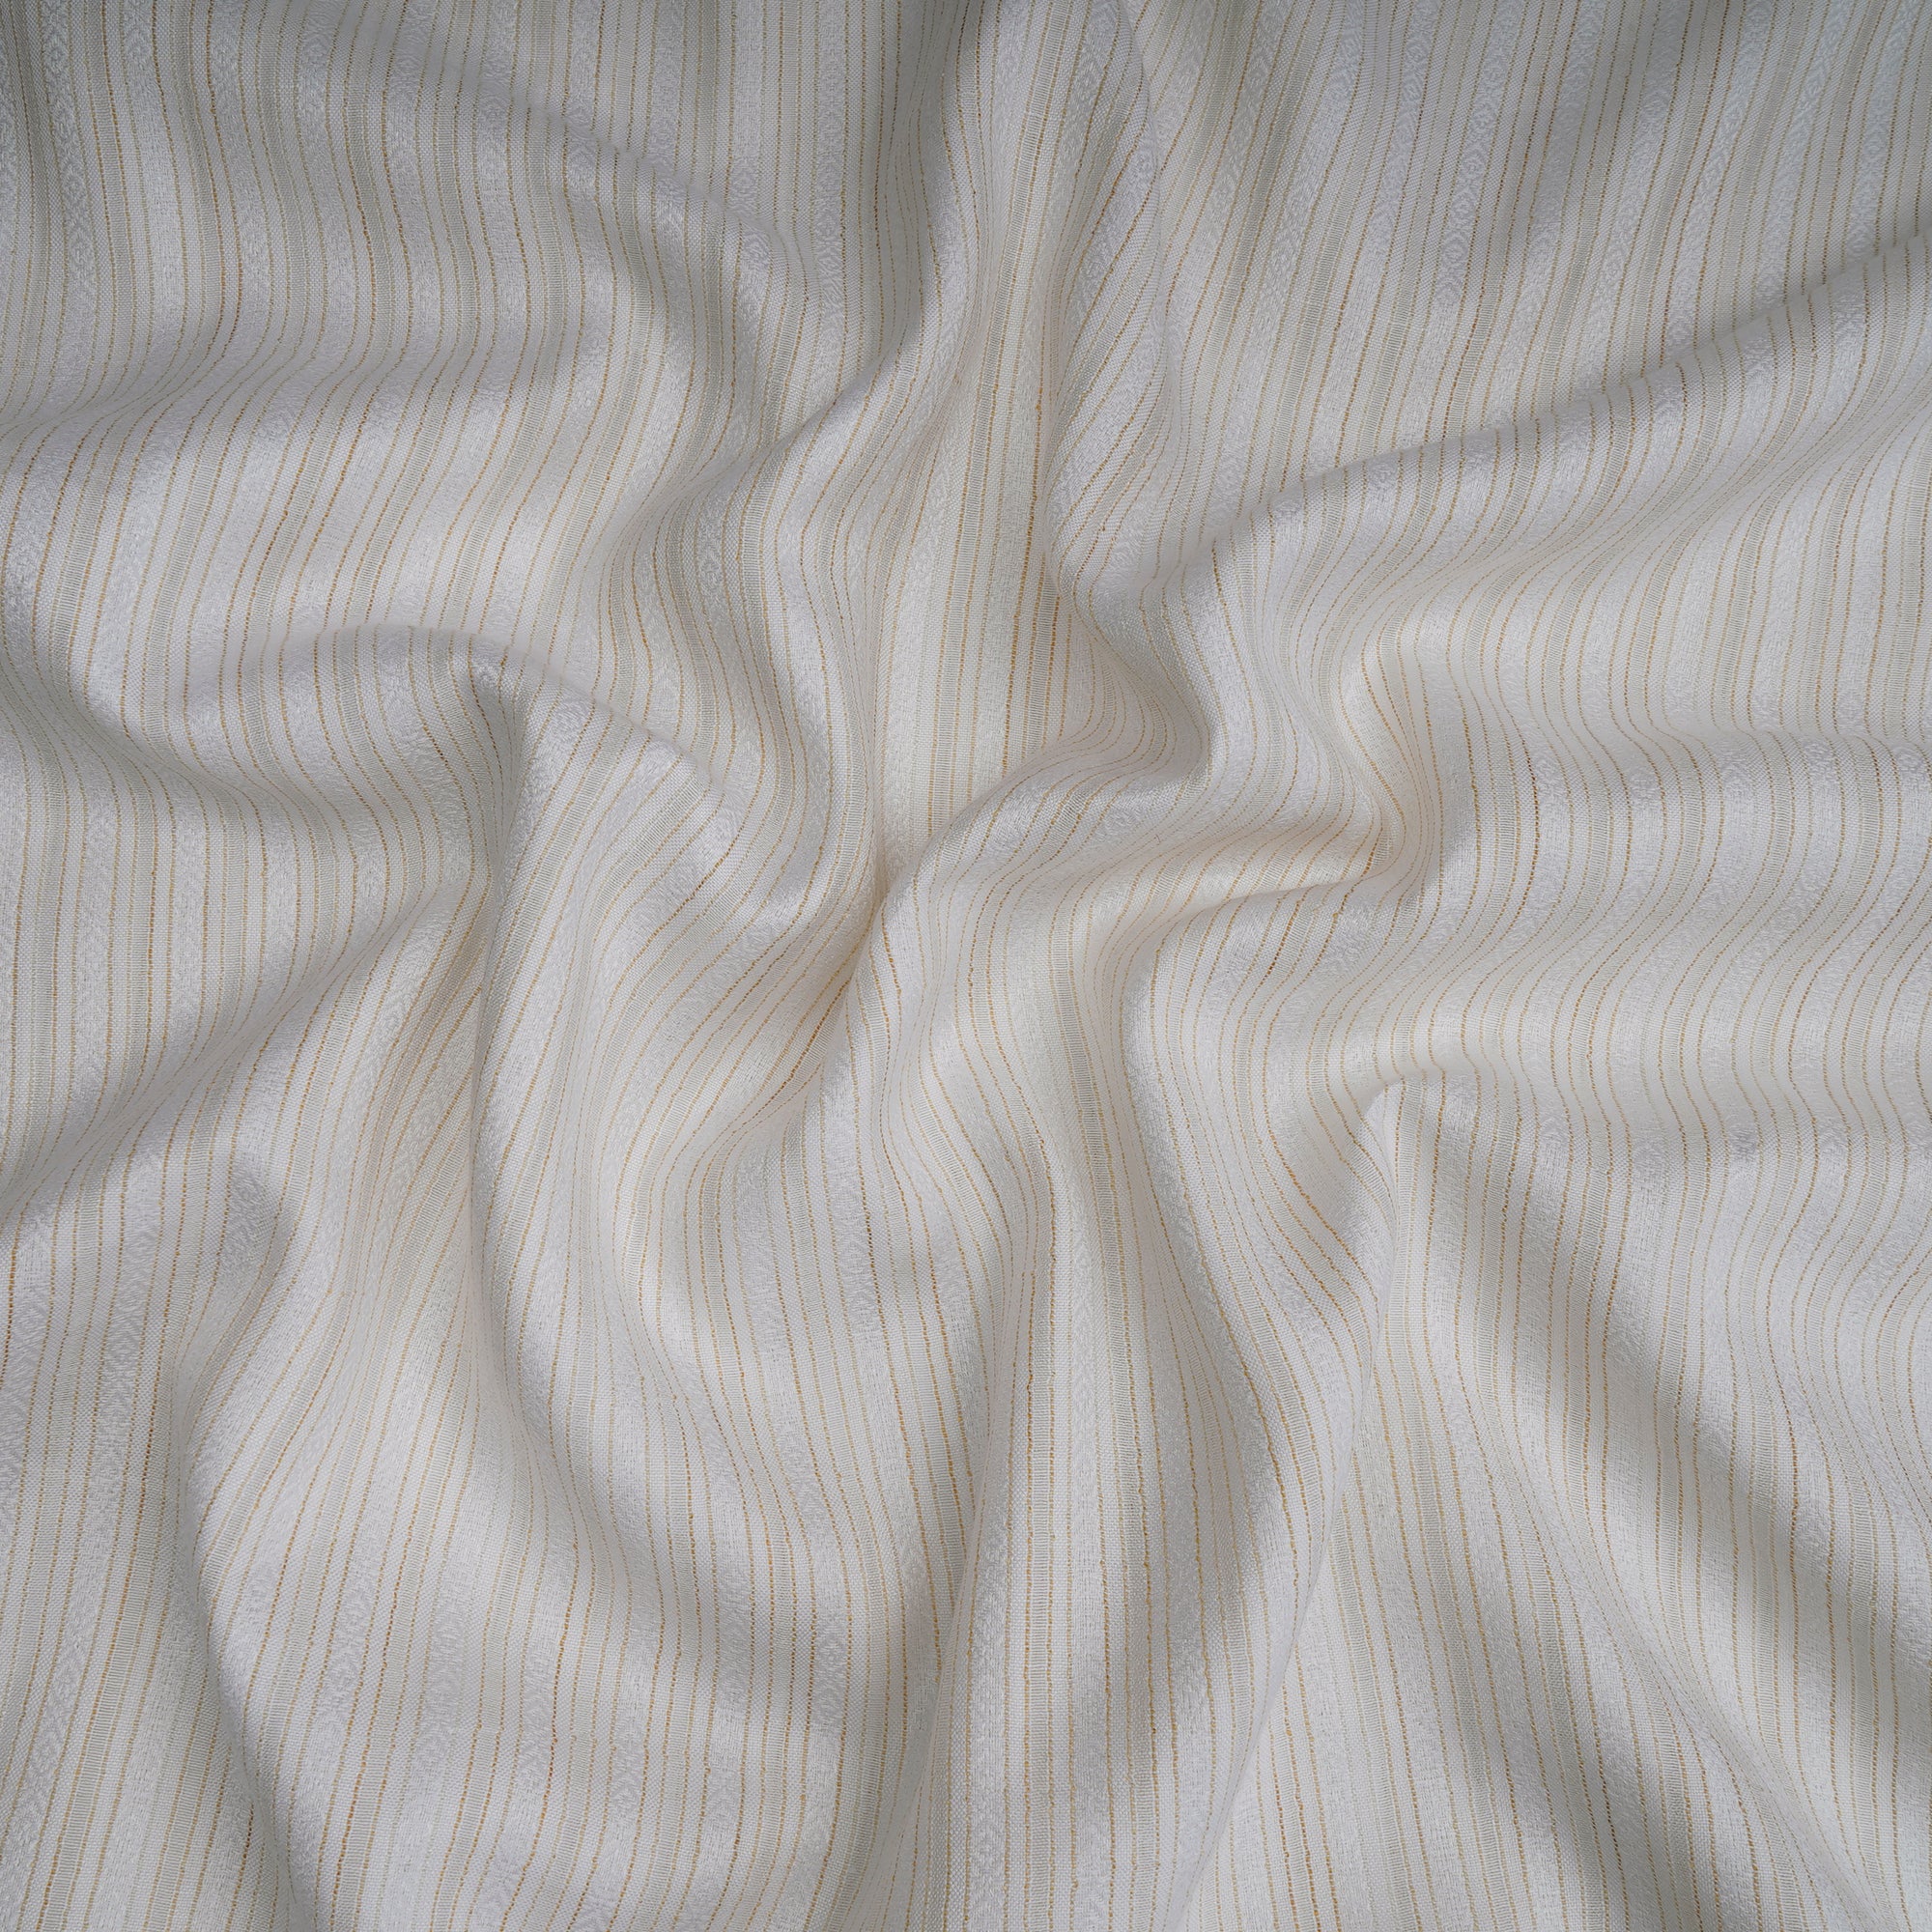 Off-White Color Striped Viscose Fabric